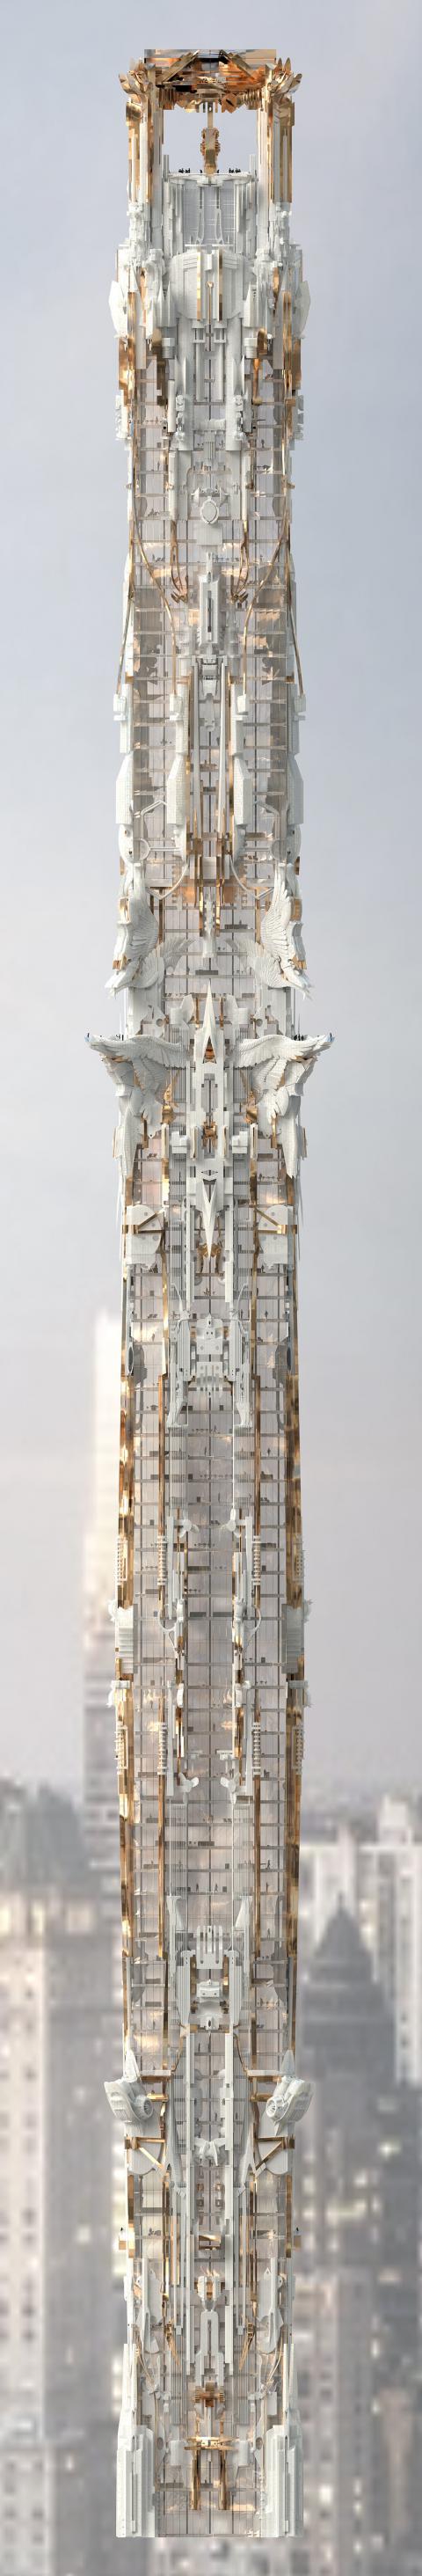 Фантастический небоскреб от Марка Фостера (ФОТО)